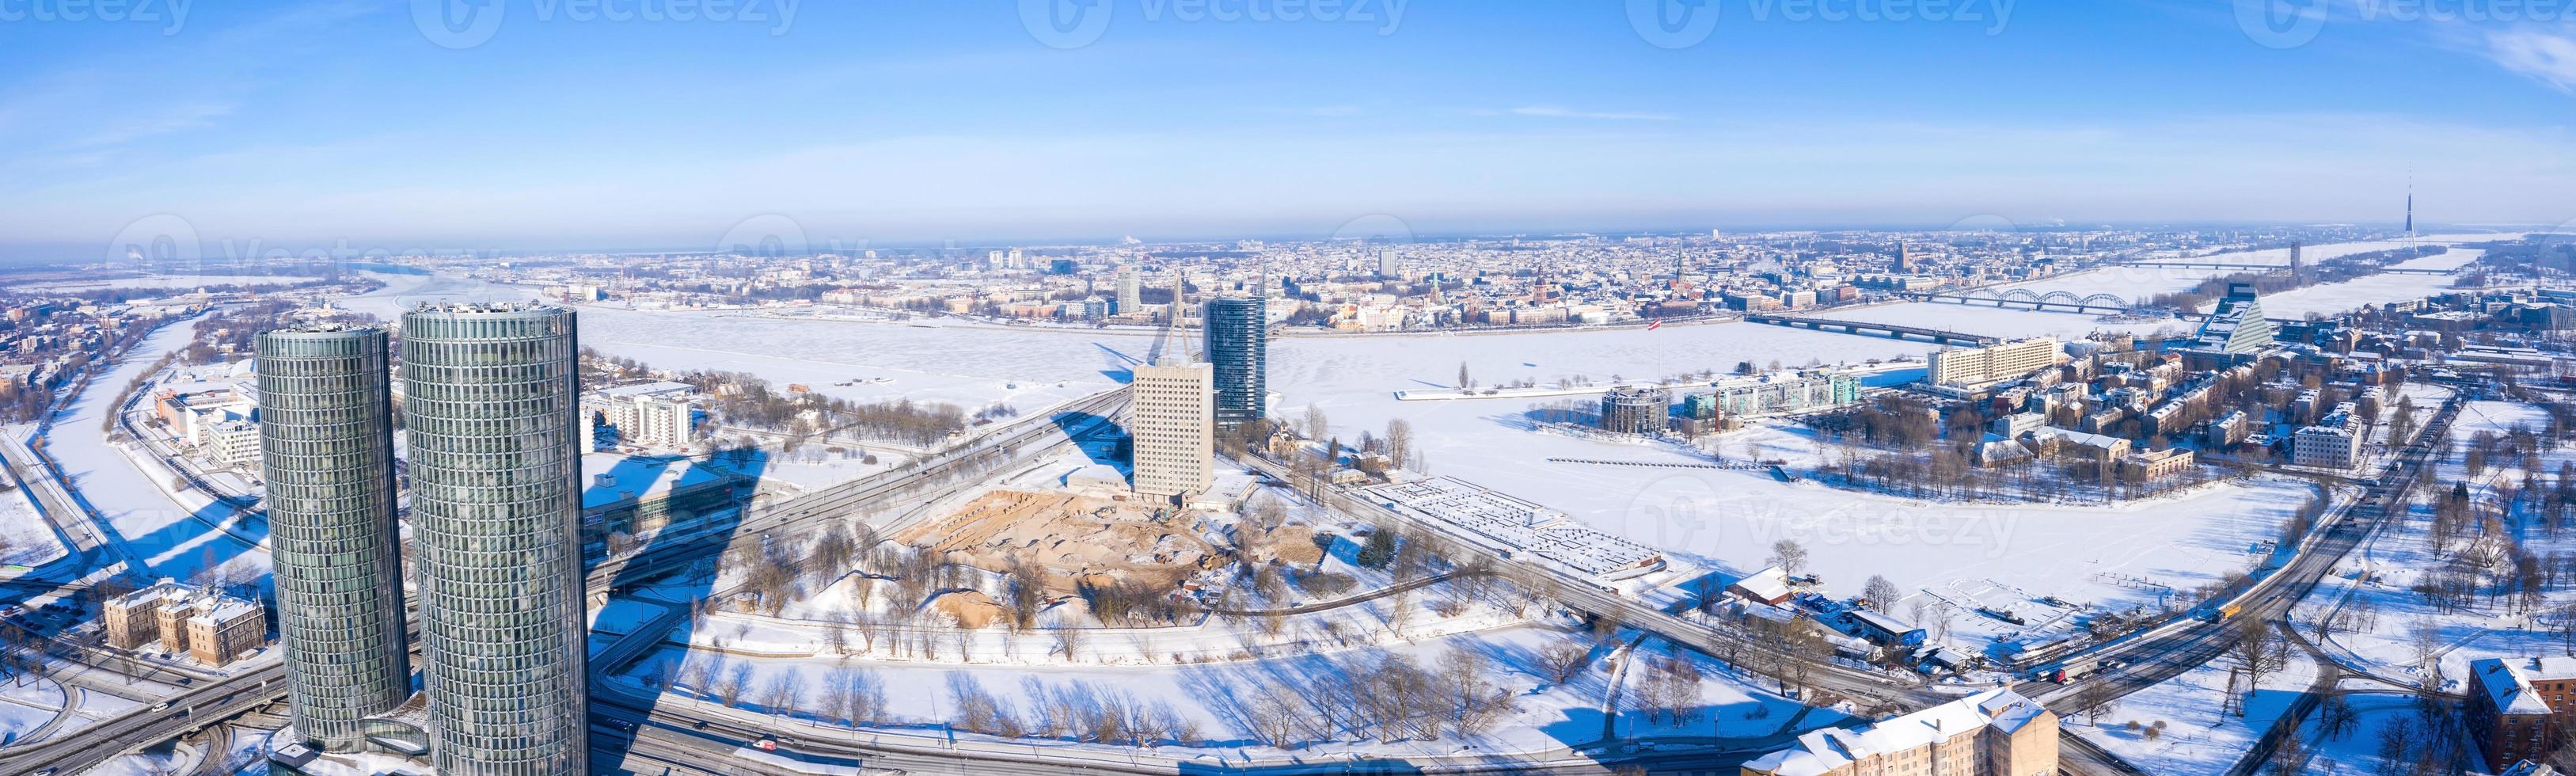 luftpanoramablick auf die stadt riga während des magischen weißen wintertages. eiskaltes Lettland. foto